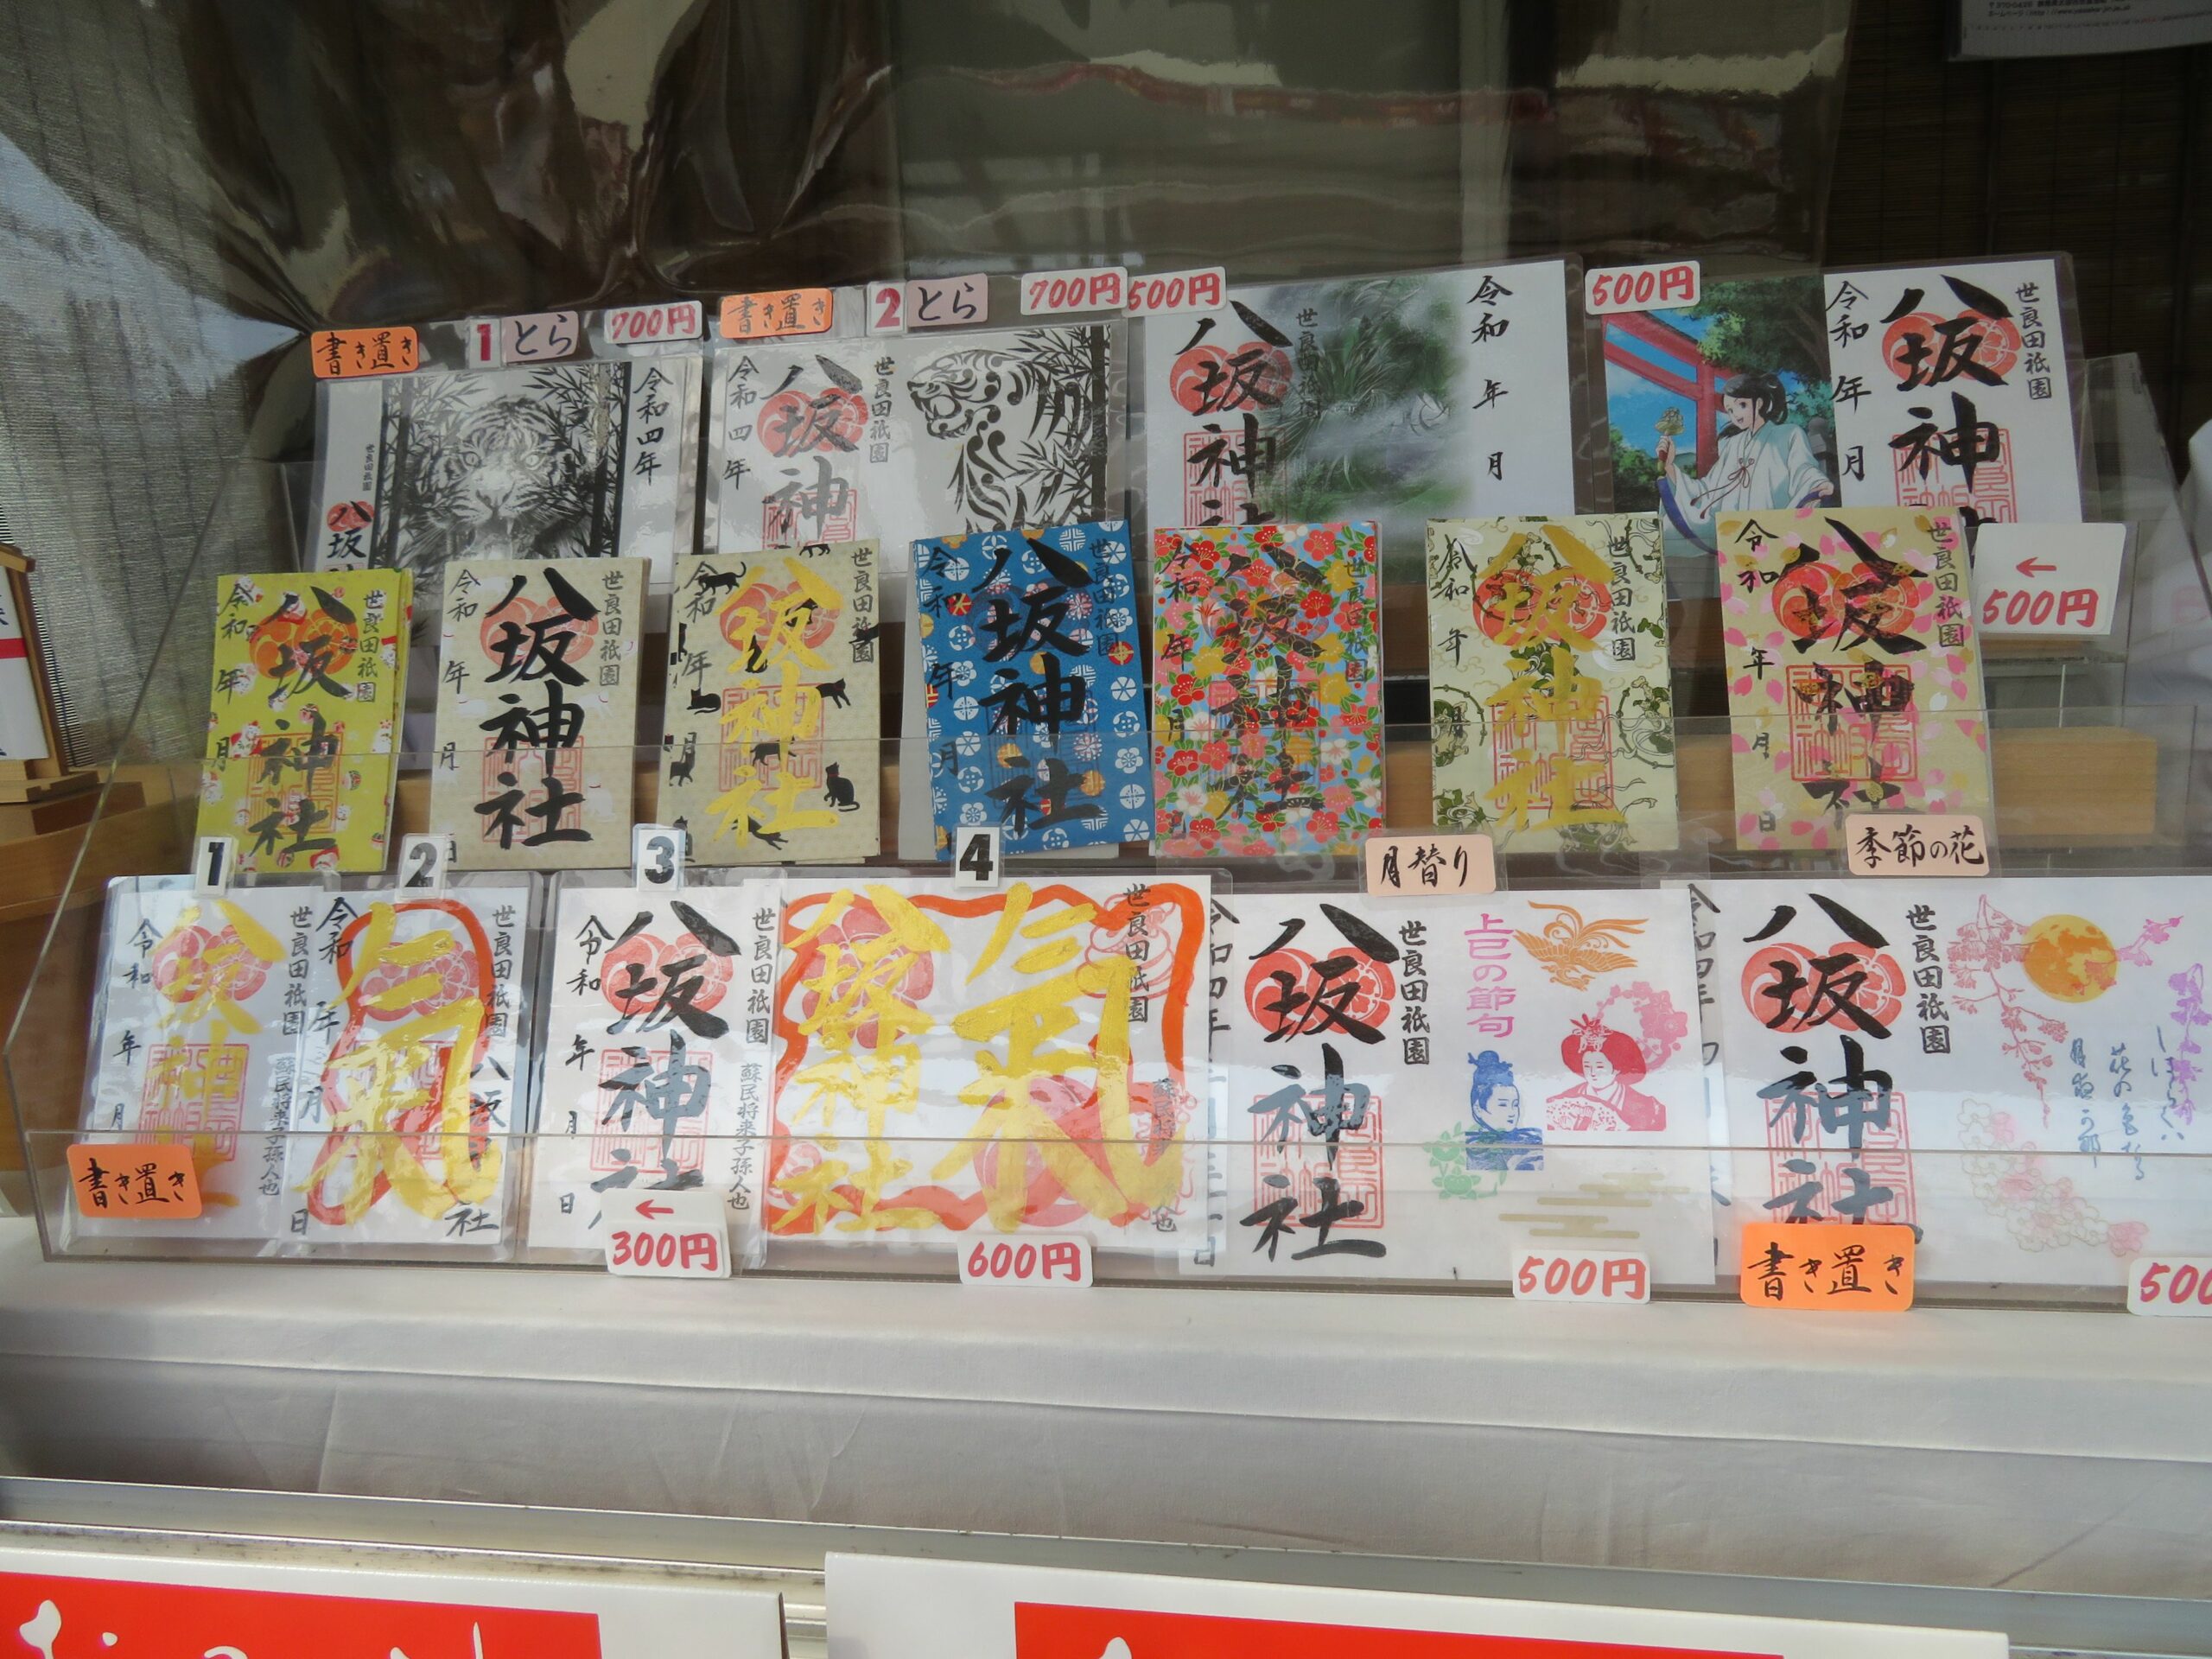 八坂神社とは 種もの御朱印と 上州三大祇園祭 で知られる古社 オマツリジャパン あなたと祭りをつなげるメディア